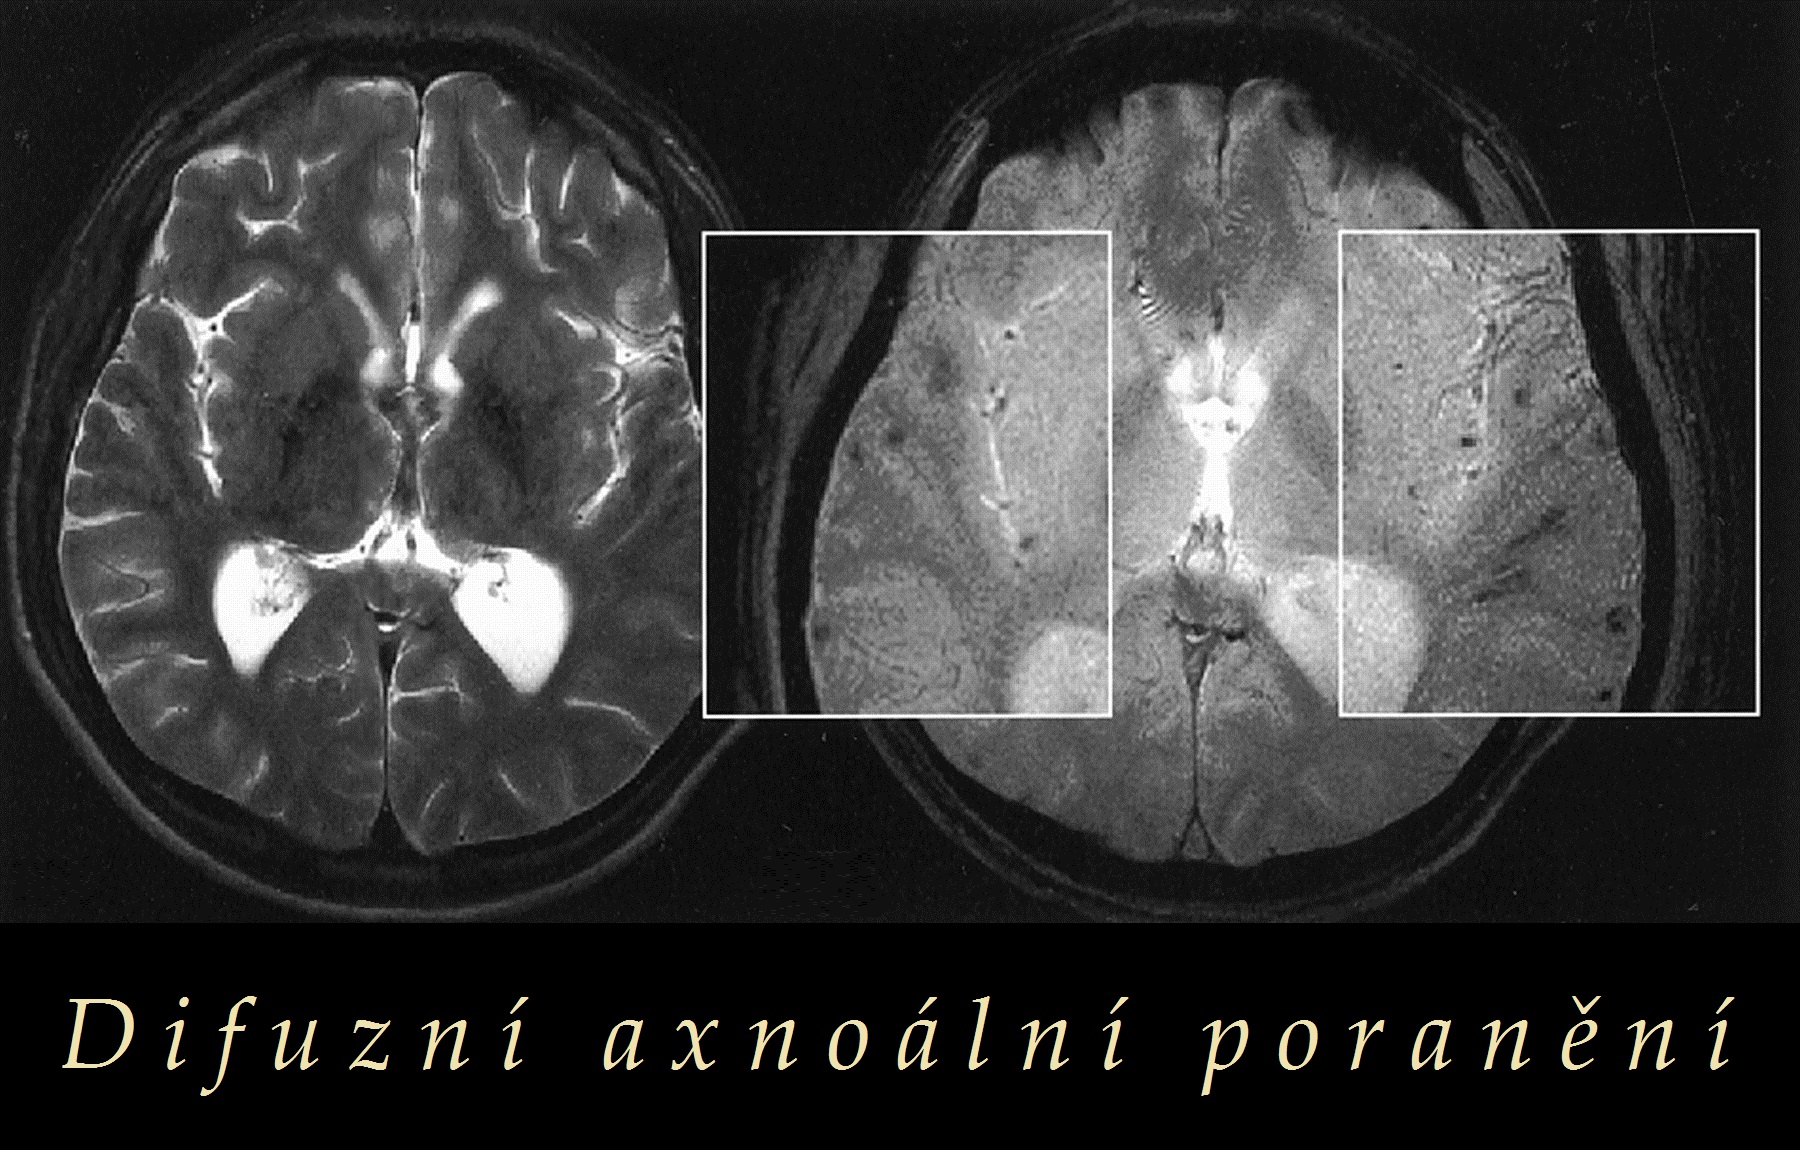 difuzni axonalni poraneni priznaky projevy symptomy obrazek fotografie